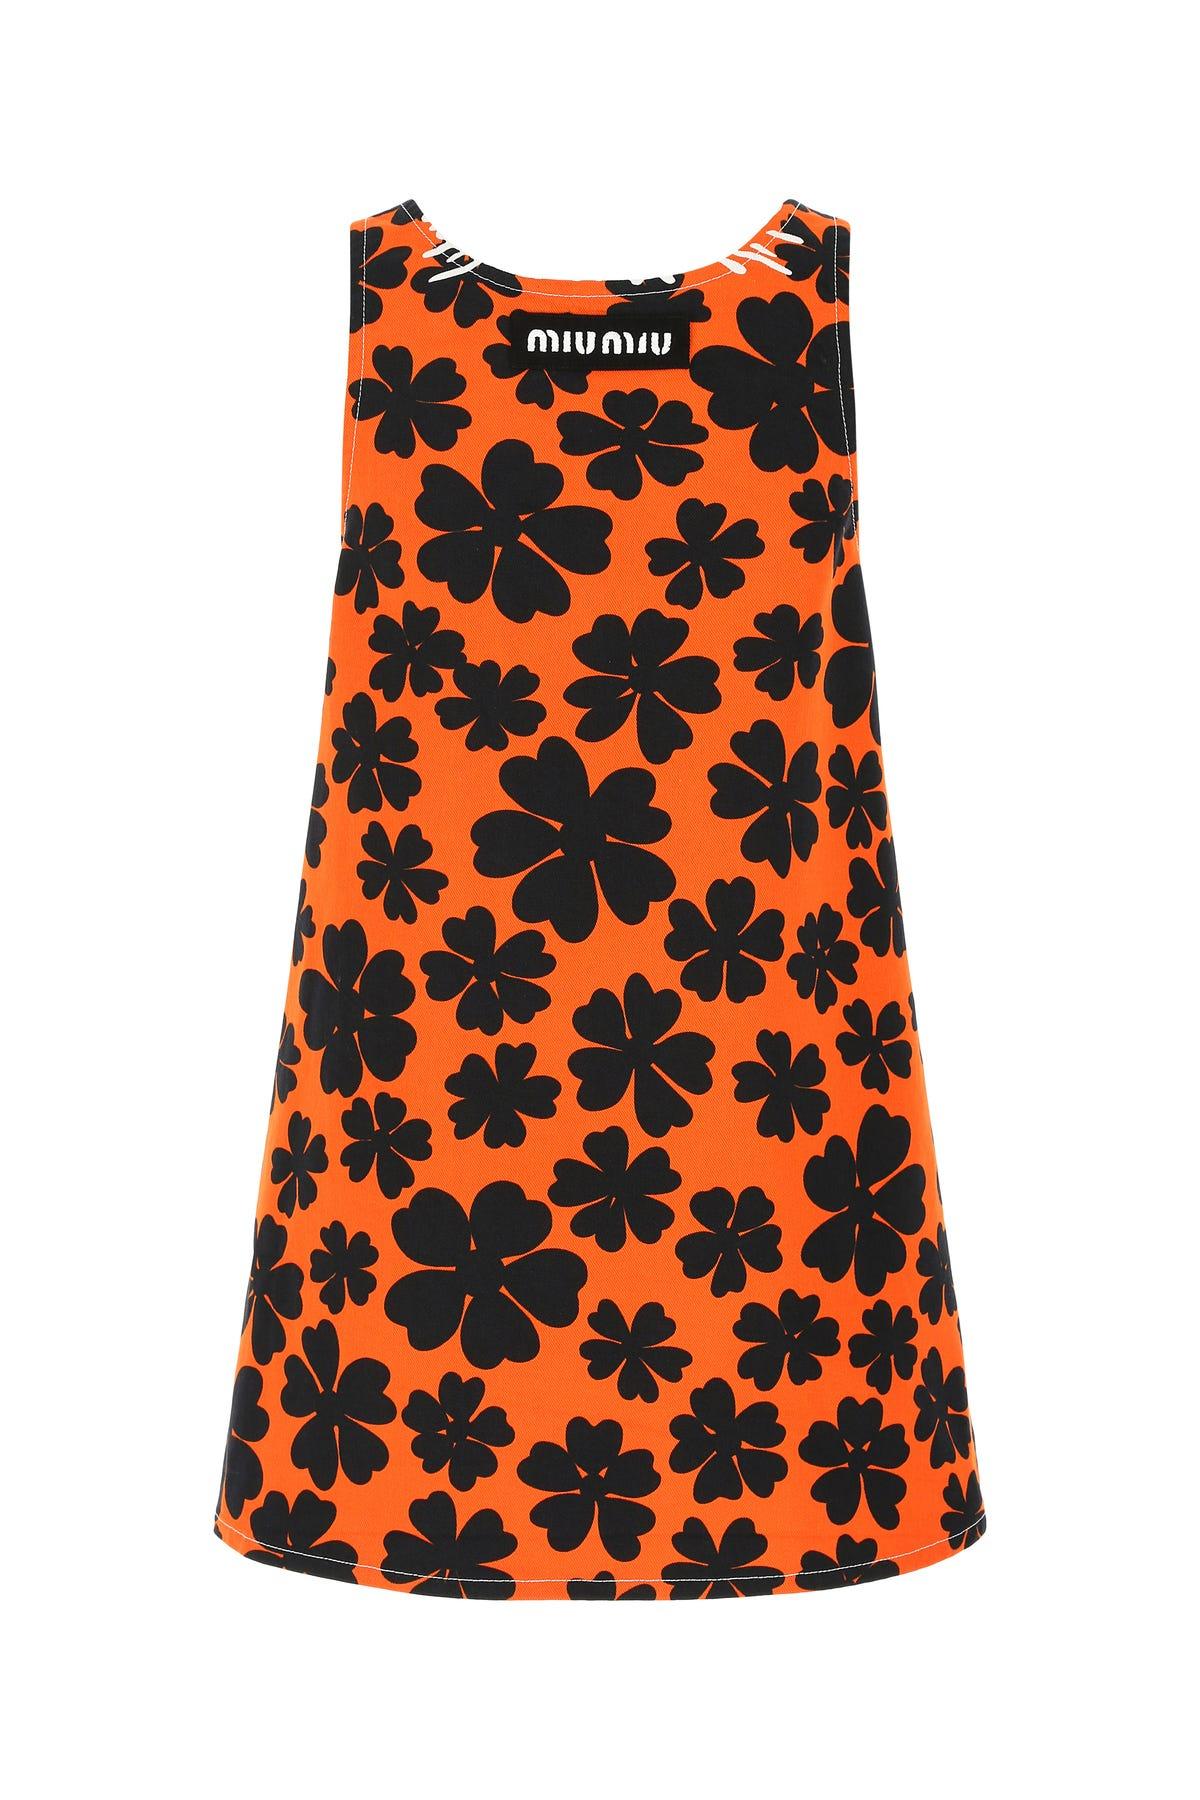 Miu Miu Printed Denim Oversize Dress in Floral (Orange) - Lyst